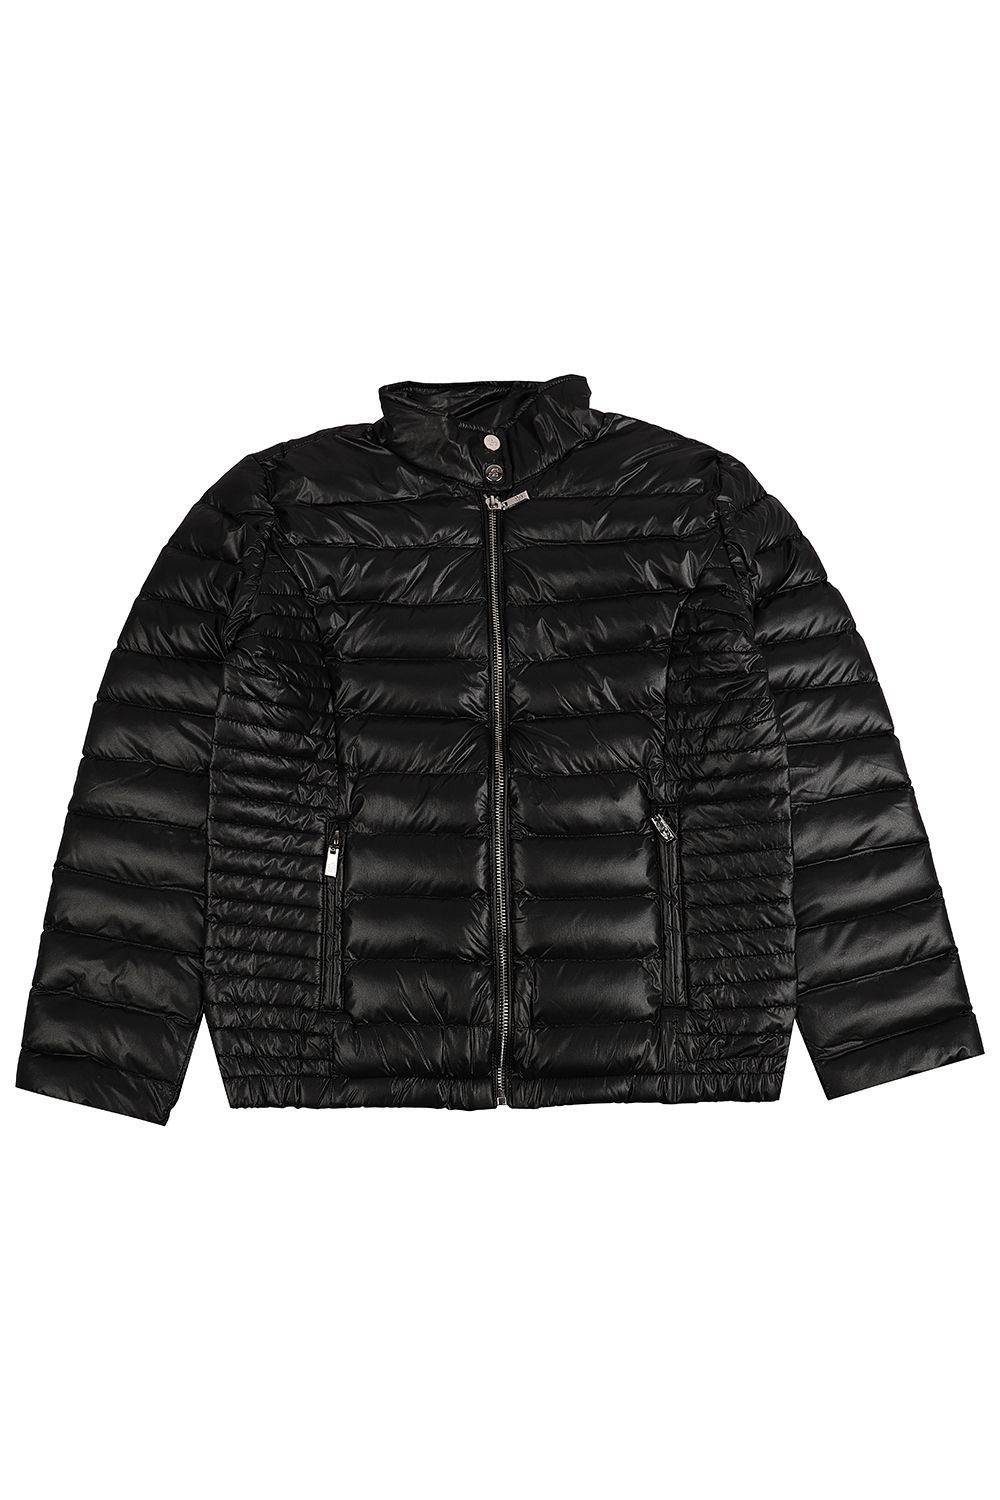 Куртка Gaialuna, размер 152, цвет черный G2338 - фото 2